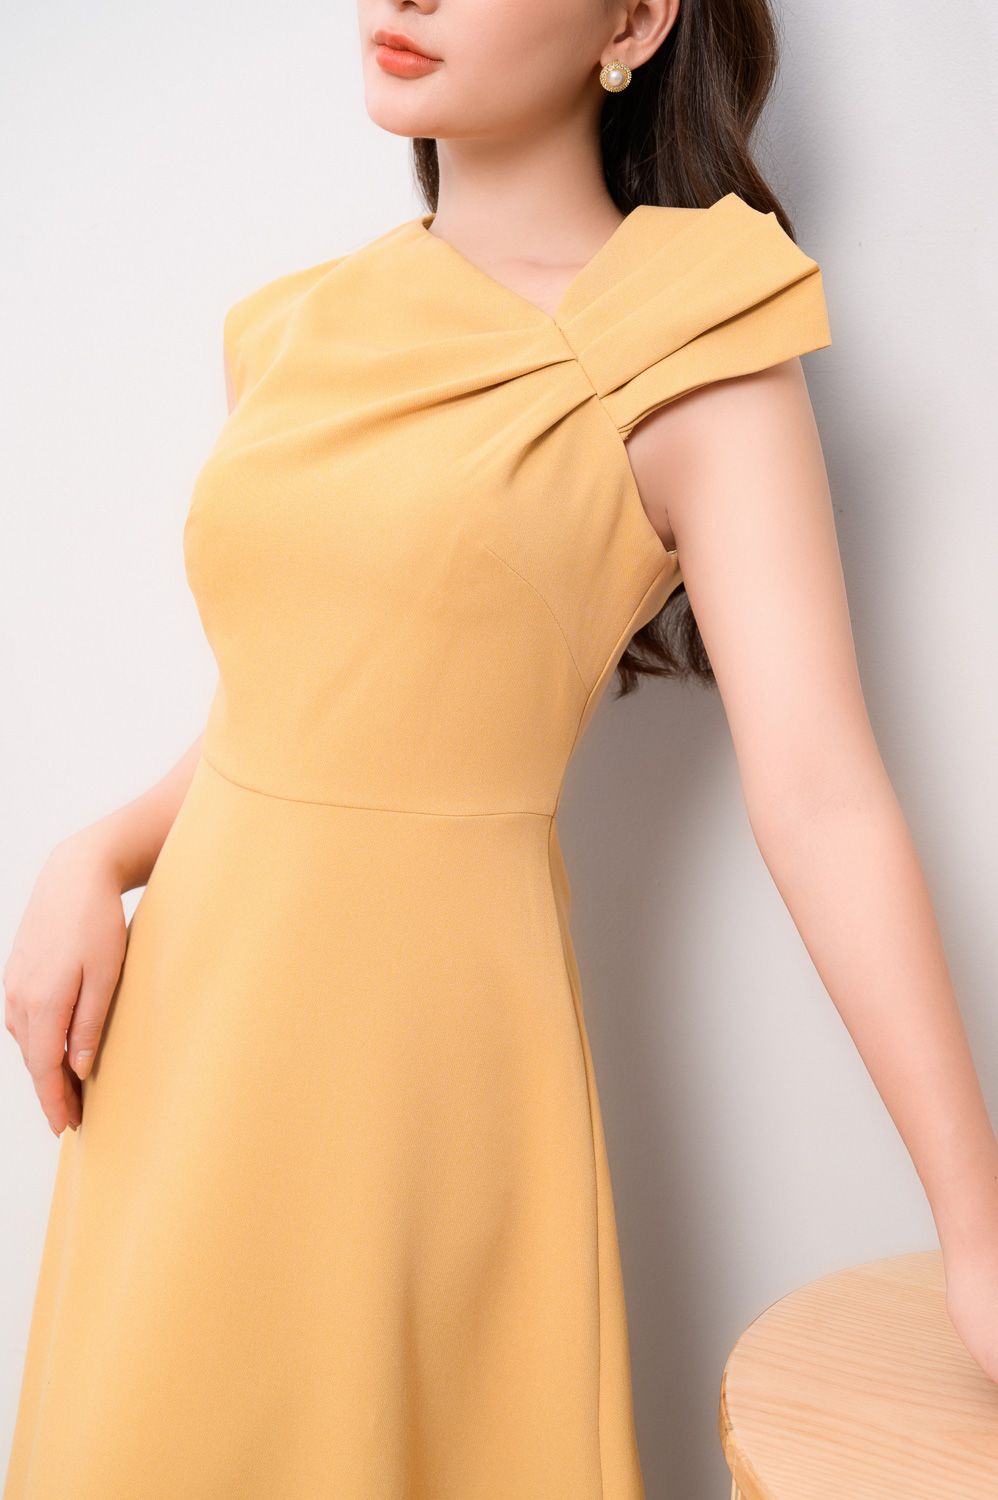 Mới) Mã B4024 Giá 2000K: Váy Đầm Liền Thân Nữ Yureag Dáng Ôm Body Gợi Cảm  Sexy Hàng Mùa Hè Thời Trang Nữ Đồ Công Sở Chất Liệu G05 Sản Phẩm Mới, (